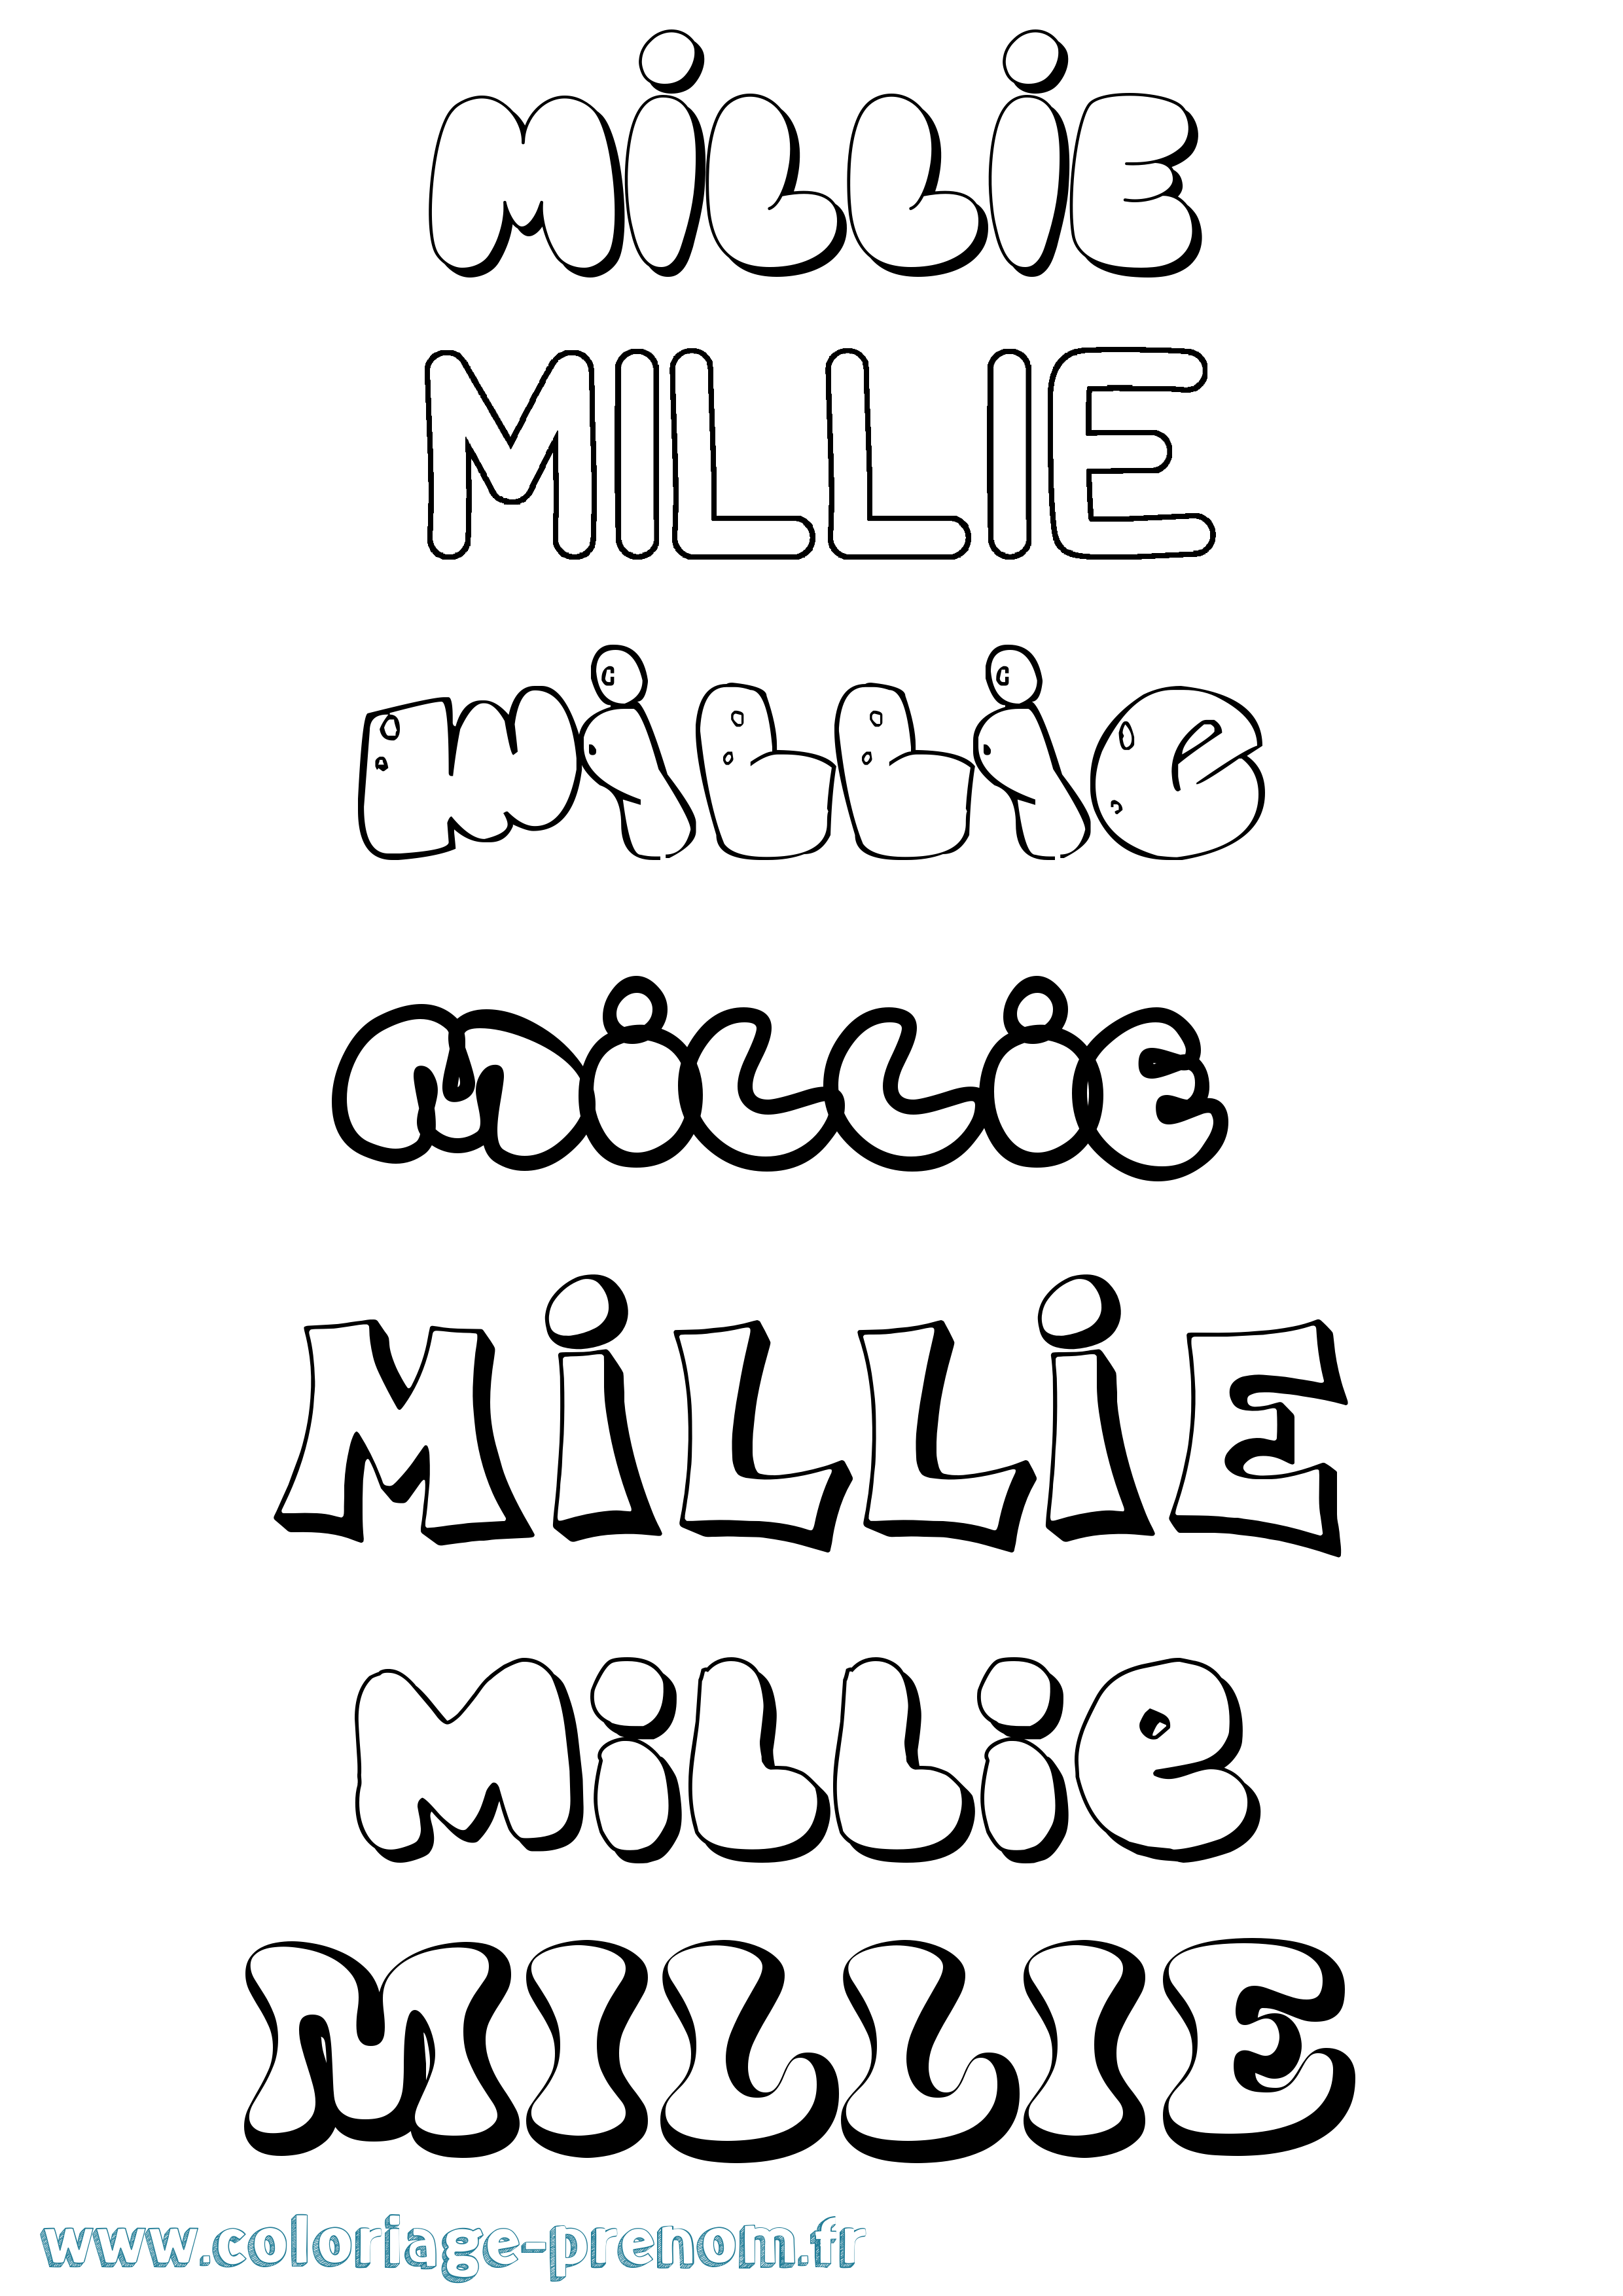 Coloriage prénom Millie Bubble